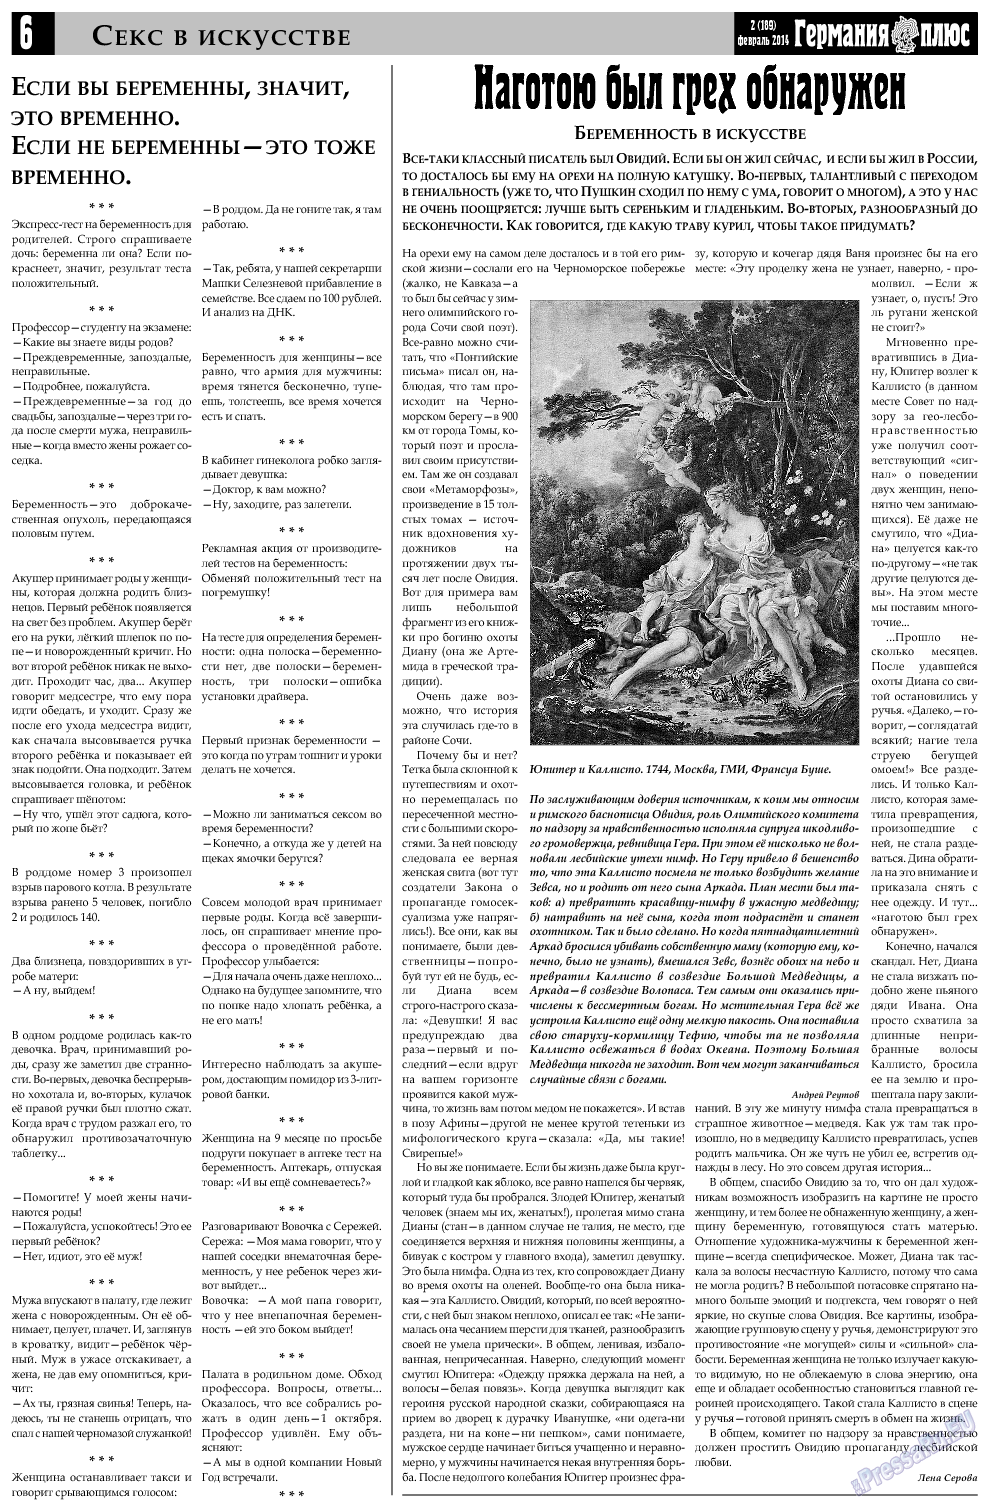 Германия плюс, газета. 2014 №2 стр.6